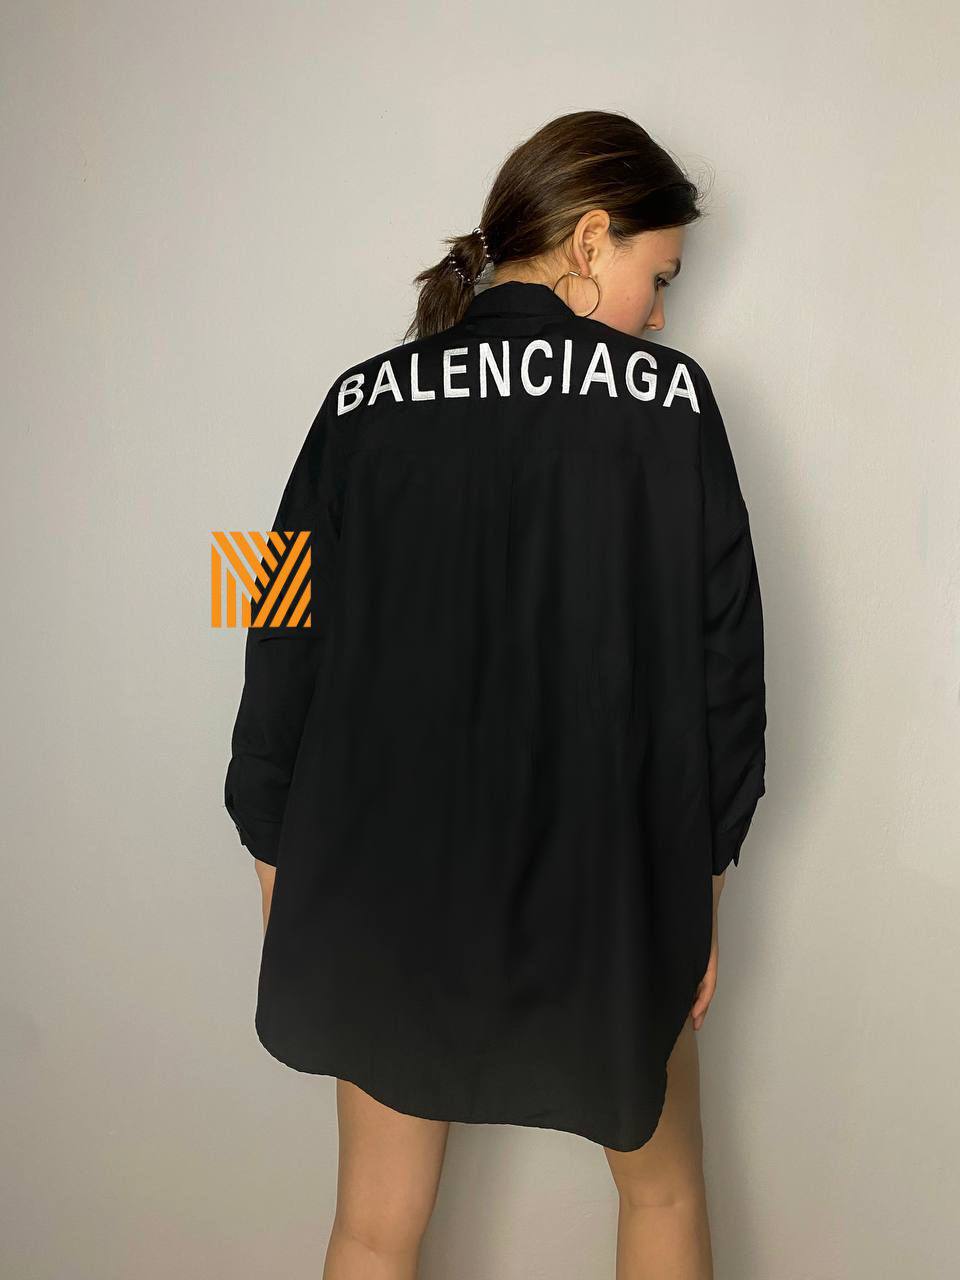 Chemise oversize pour femme de marque italienne